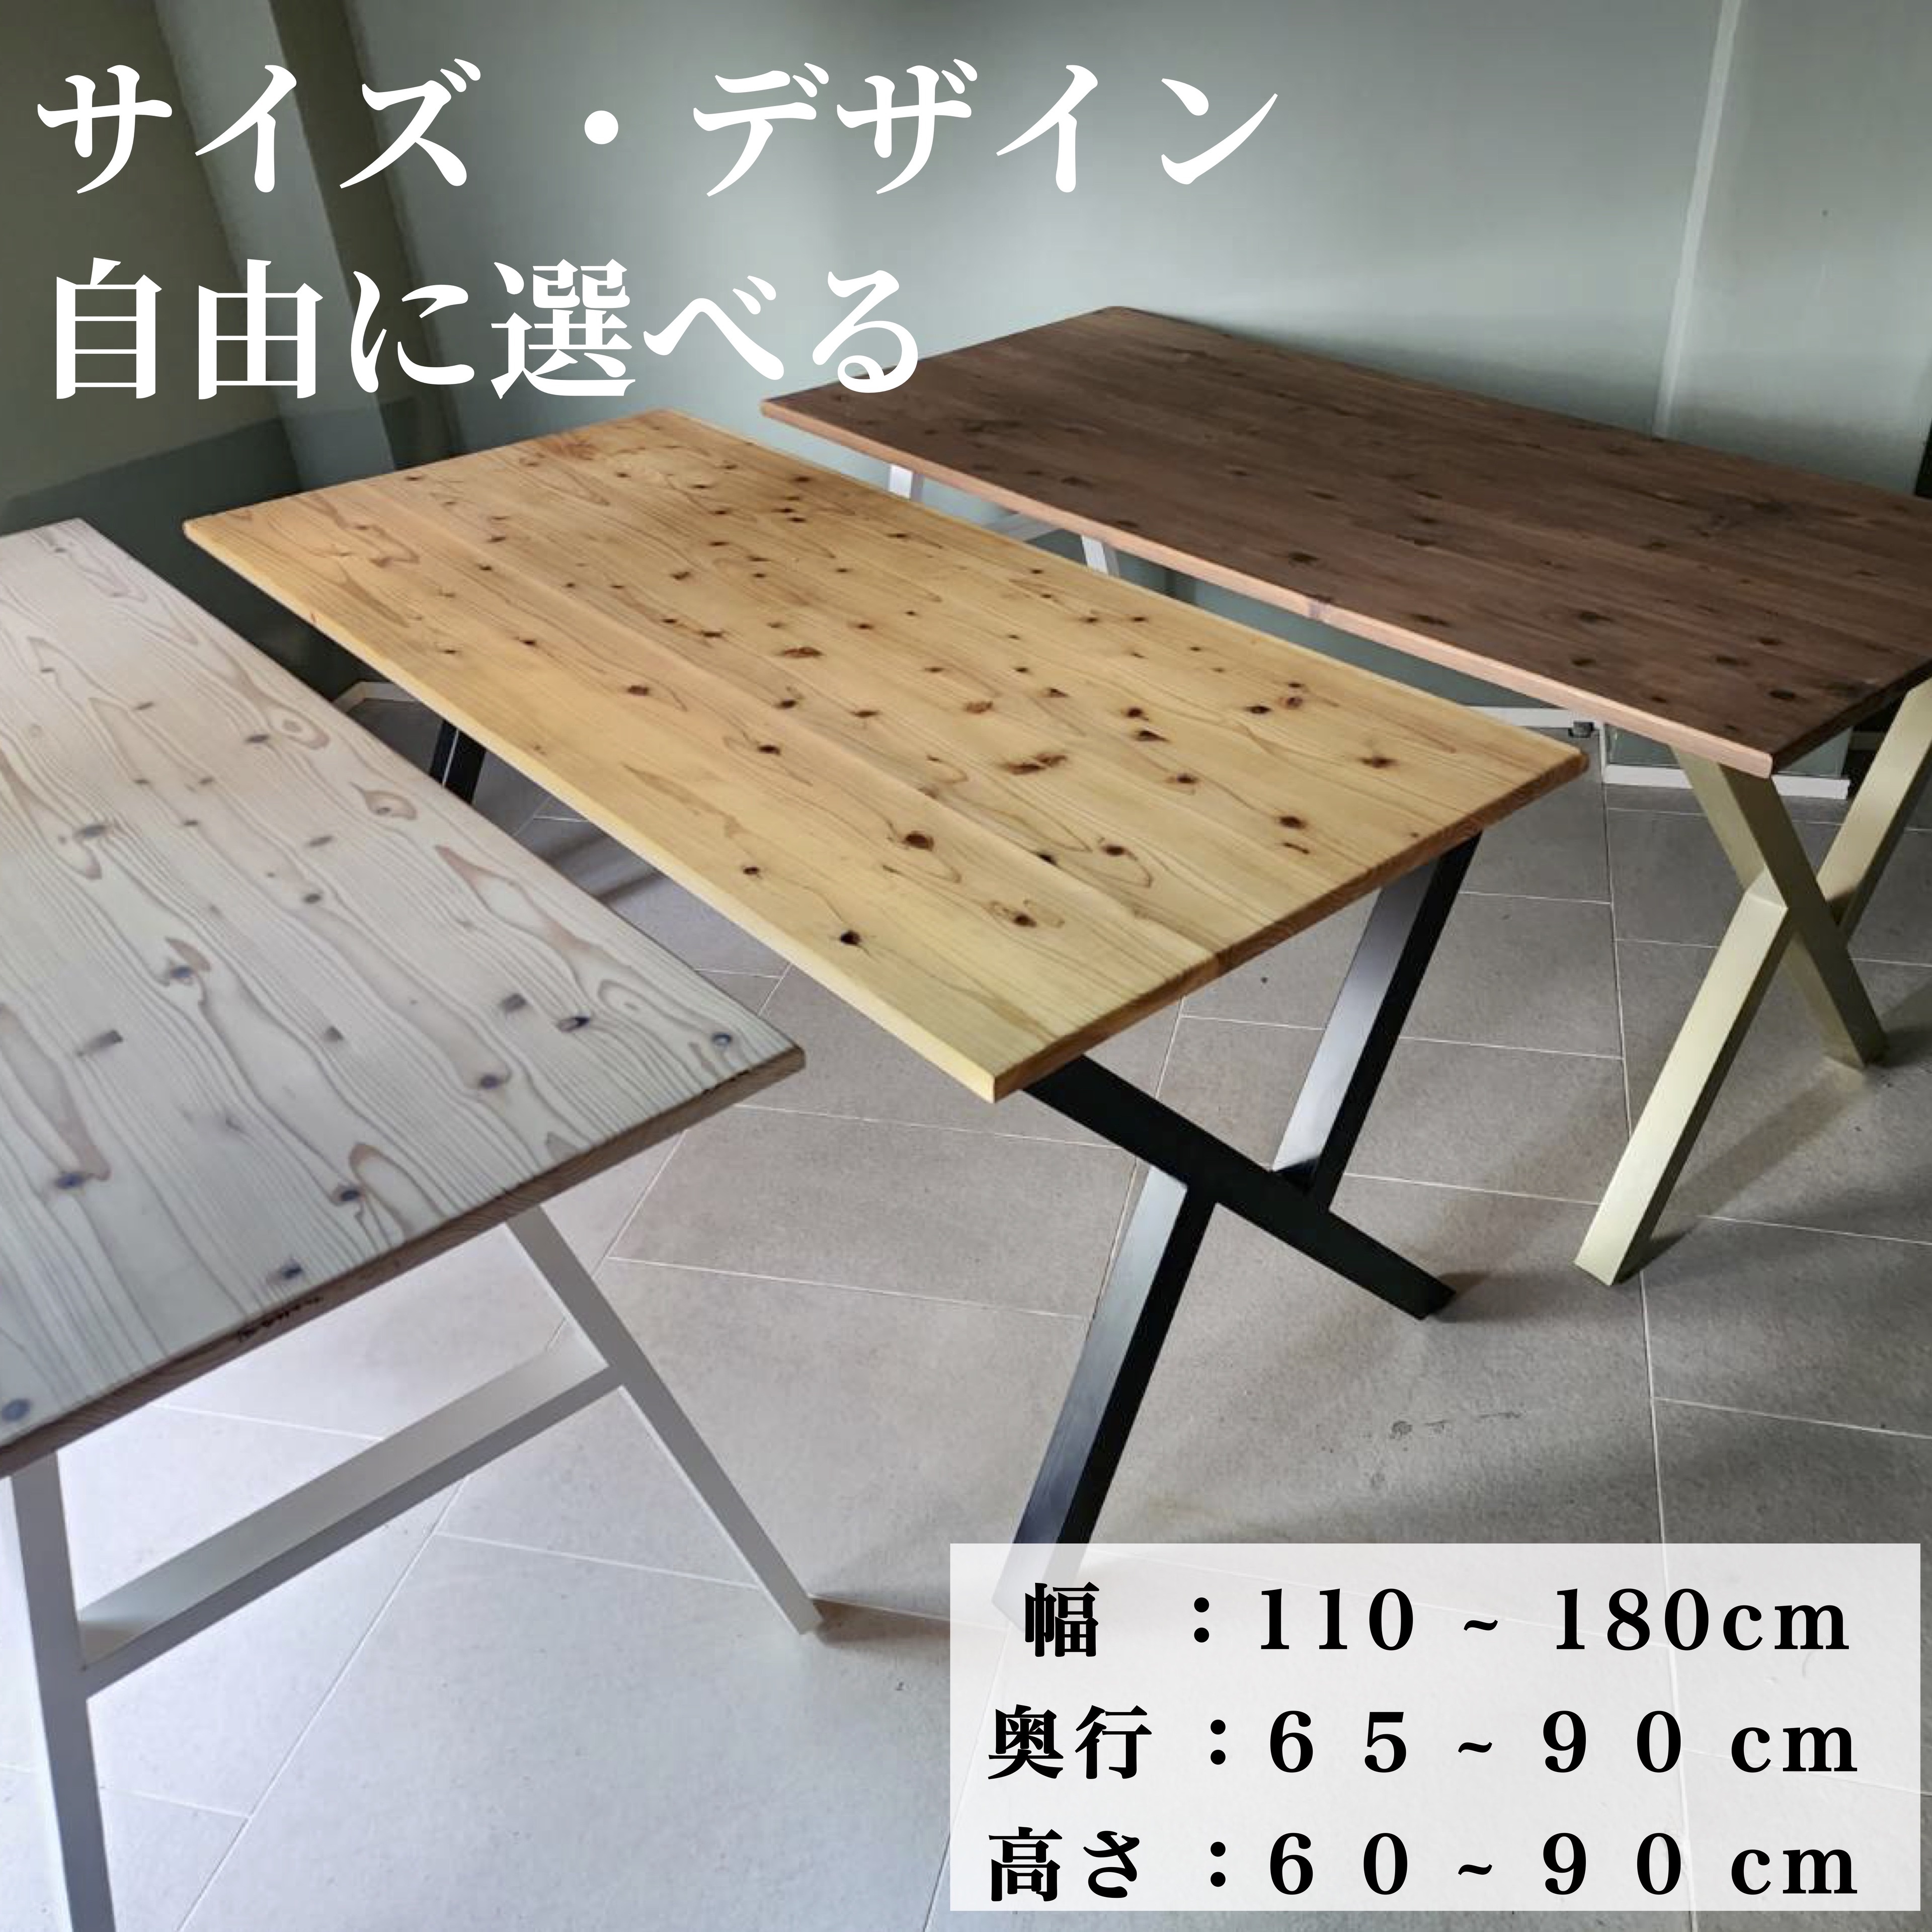 ダイニングテーブル おしゃれ 木製 天然木 アイアン 無垢 サイズ